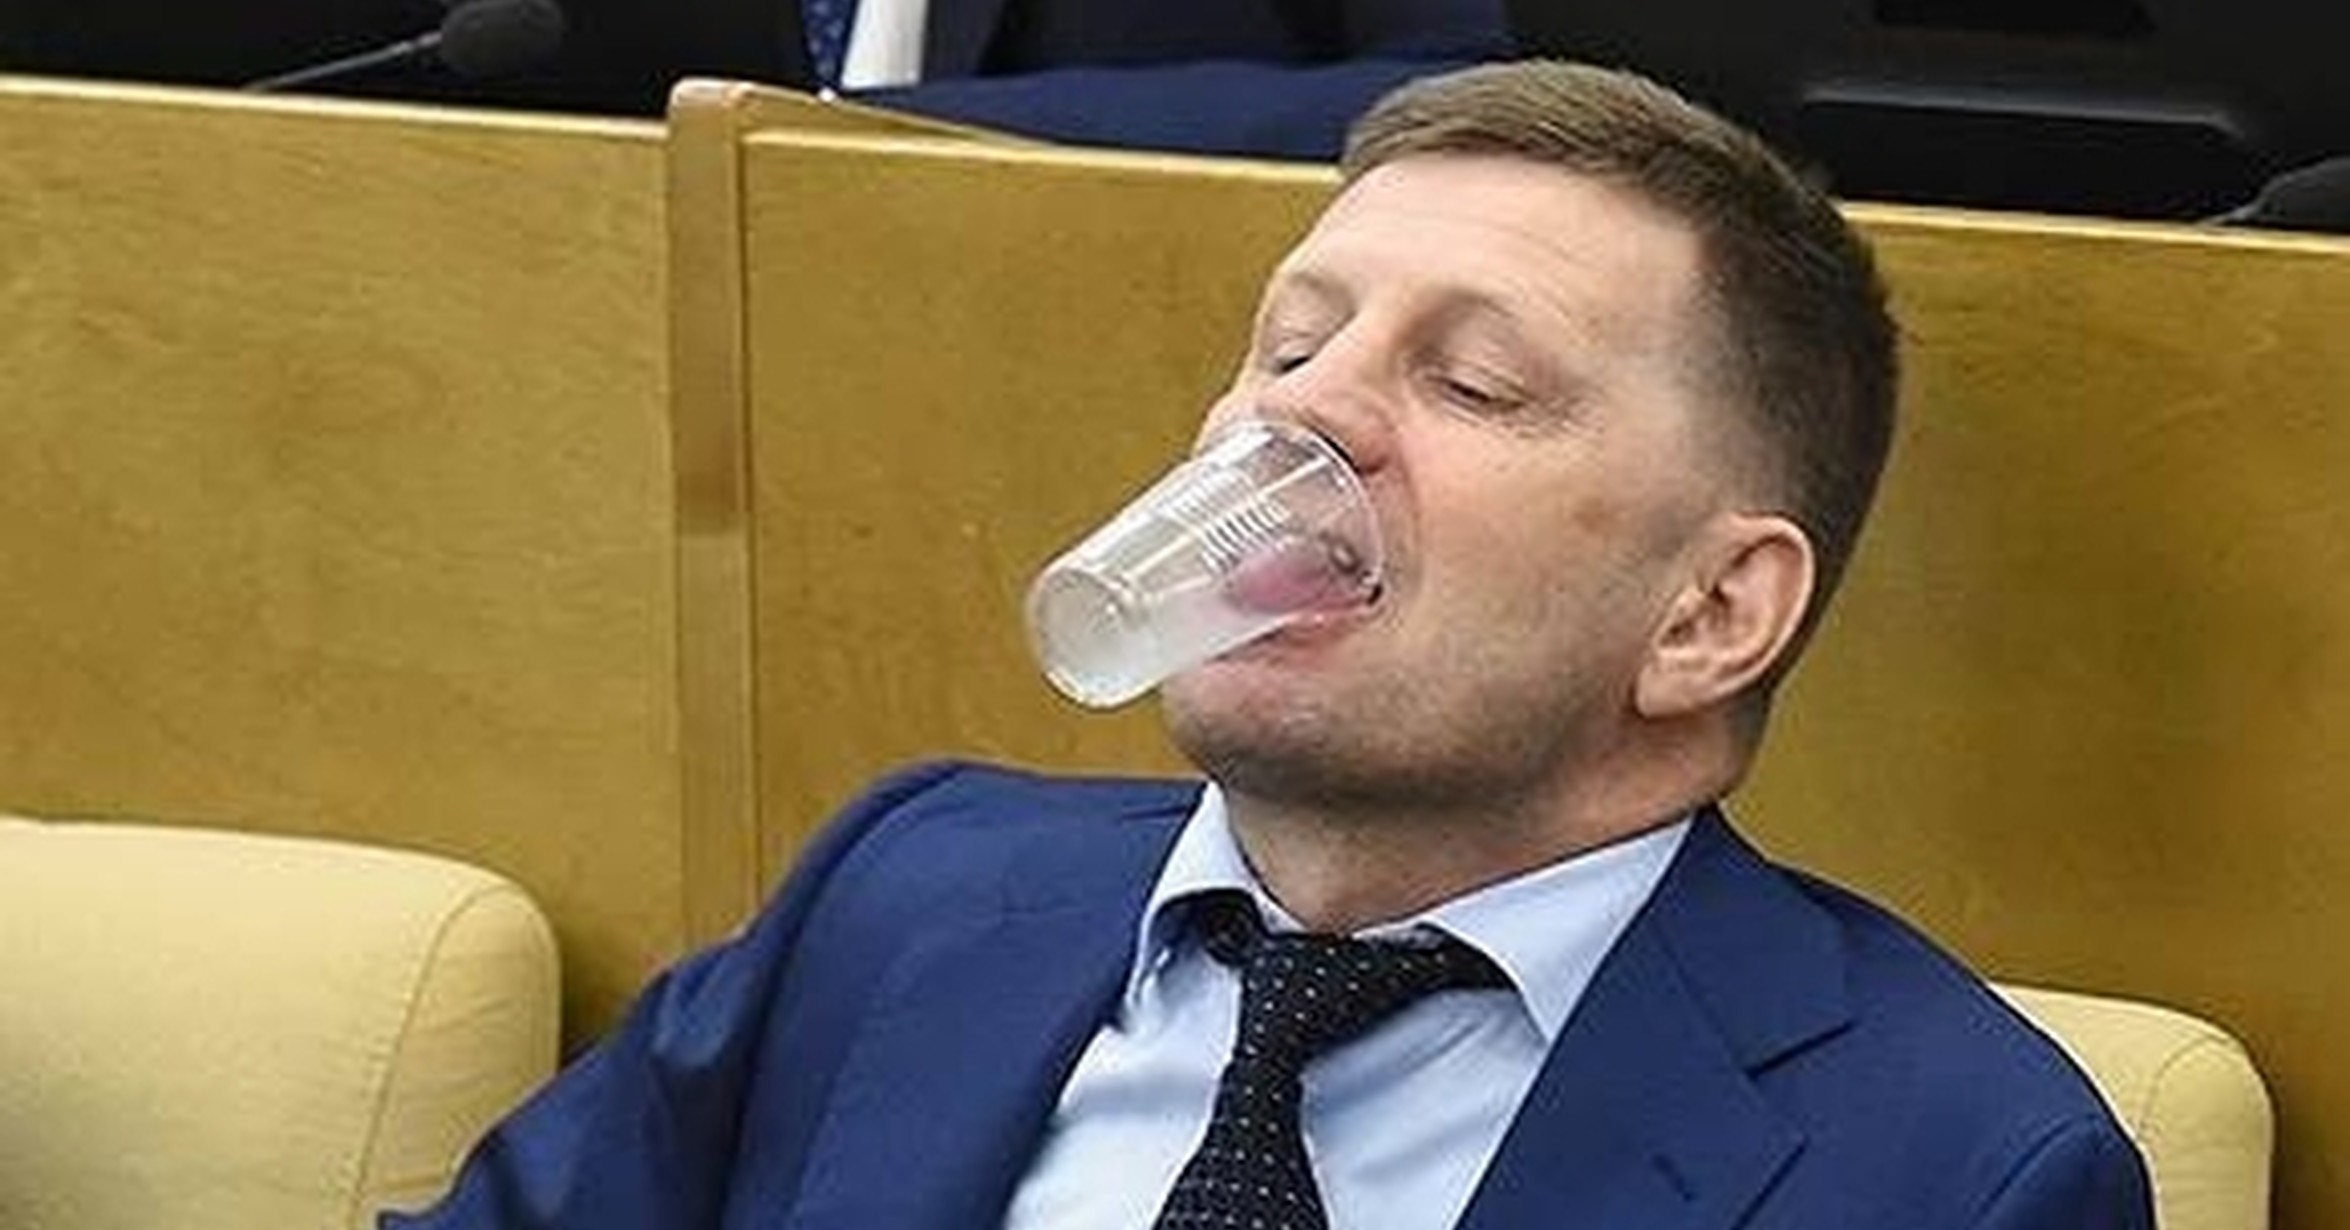 ¡Cuánta razón! / Un día típico en el parlamento ruso